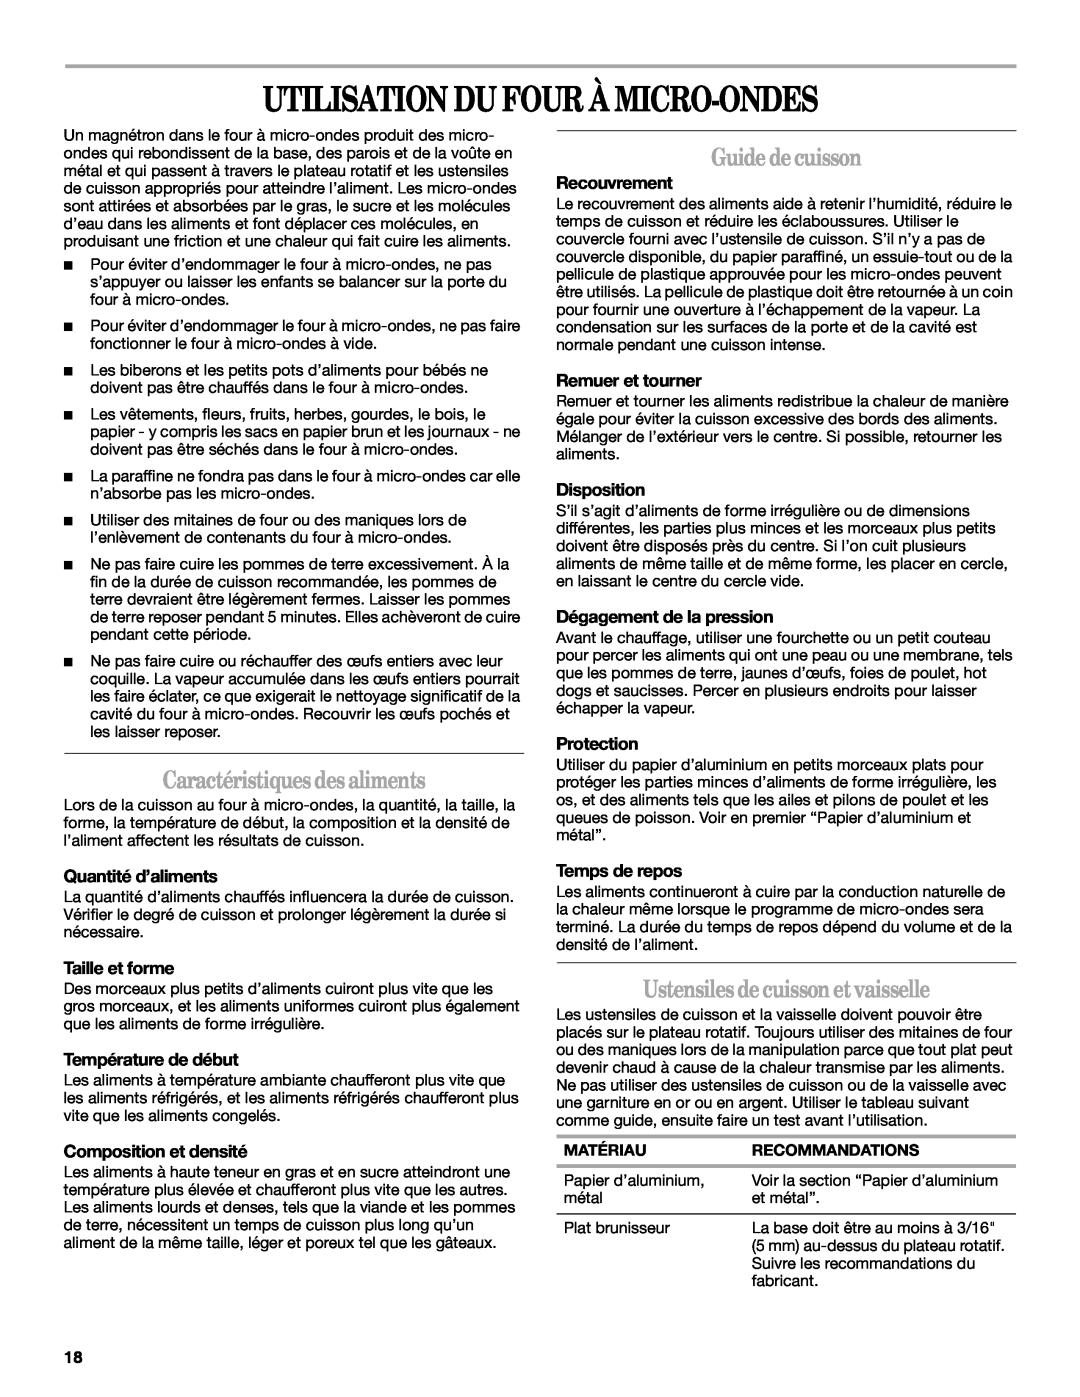 Whirlpool WMC1070 manual Utilisation Du Four À Micro-Ondes, Caractéristiquesdesaliments, Guidedecuisson 